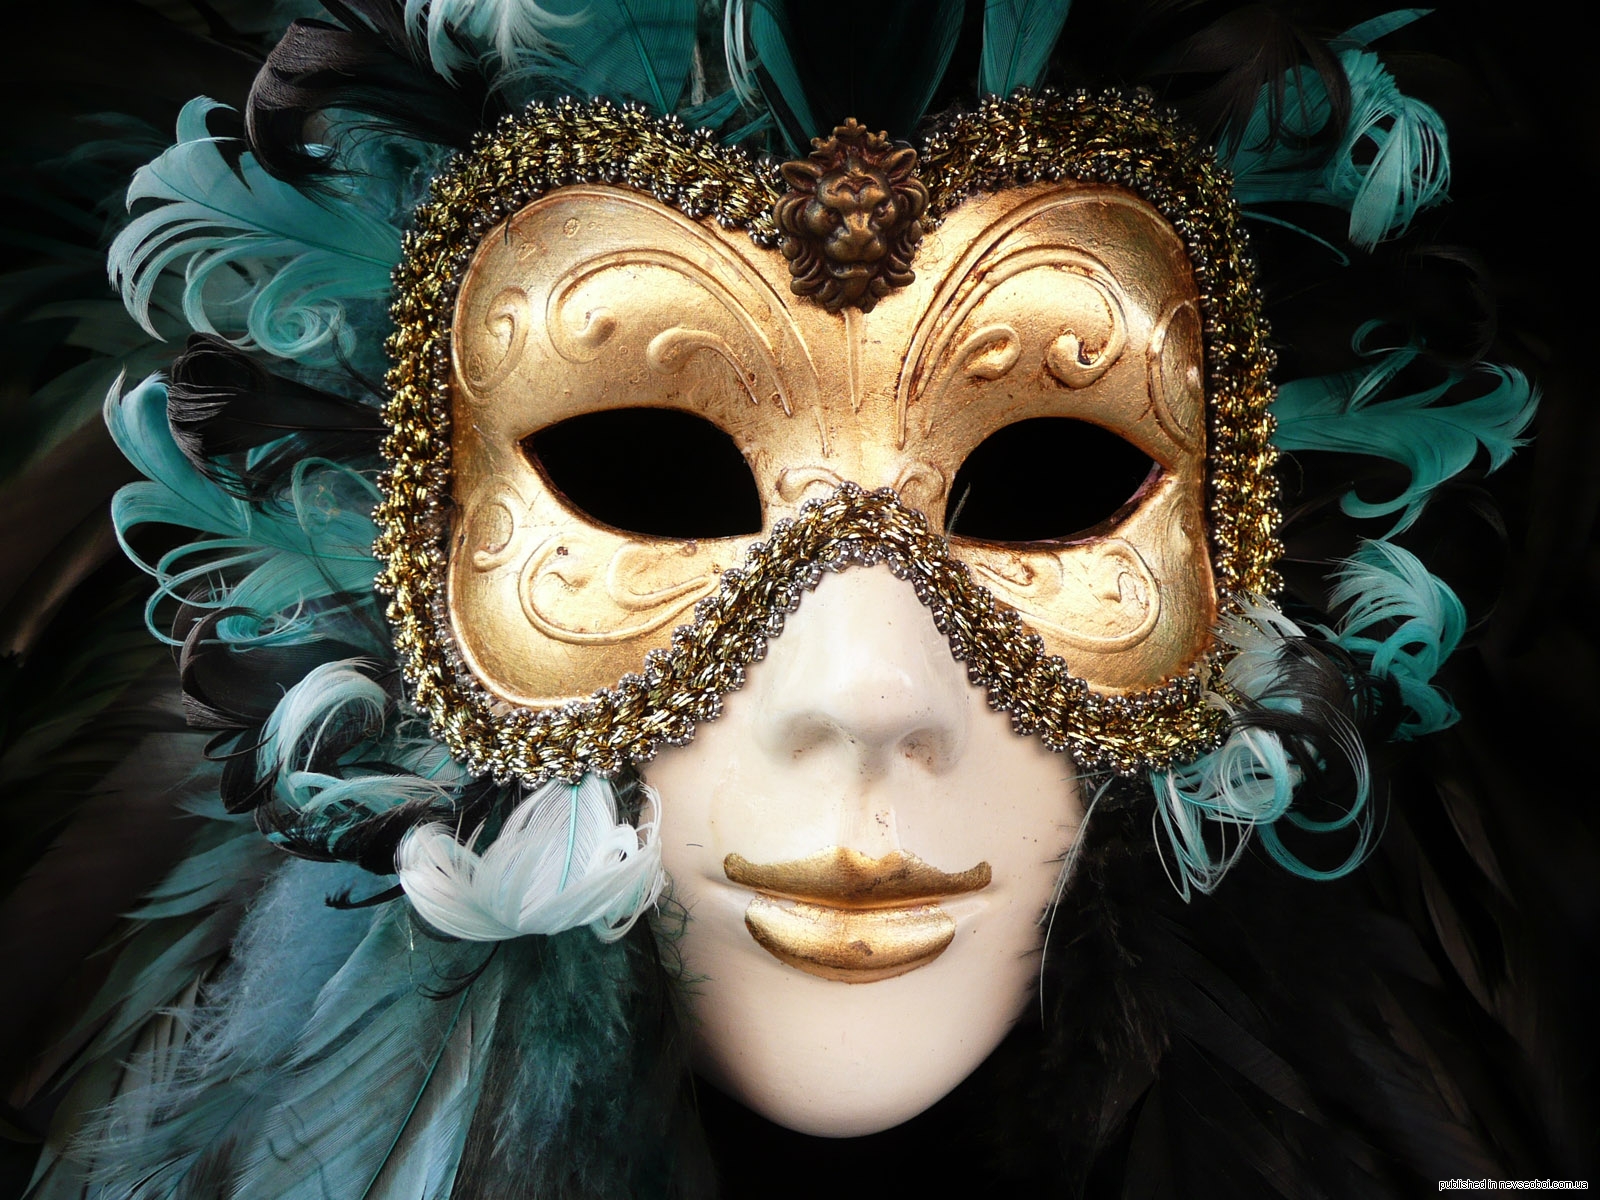 Маски на дне рождении. Джузеппе Верди "бал-маскарад". Венецианская маска Вольтер. Венецианская маска Арлекино. Венецианский карнавал Коломбина.